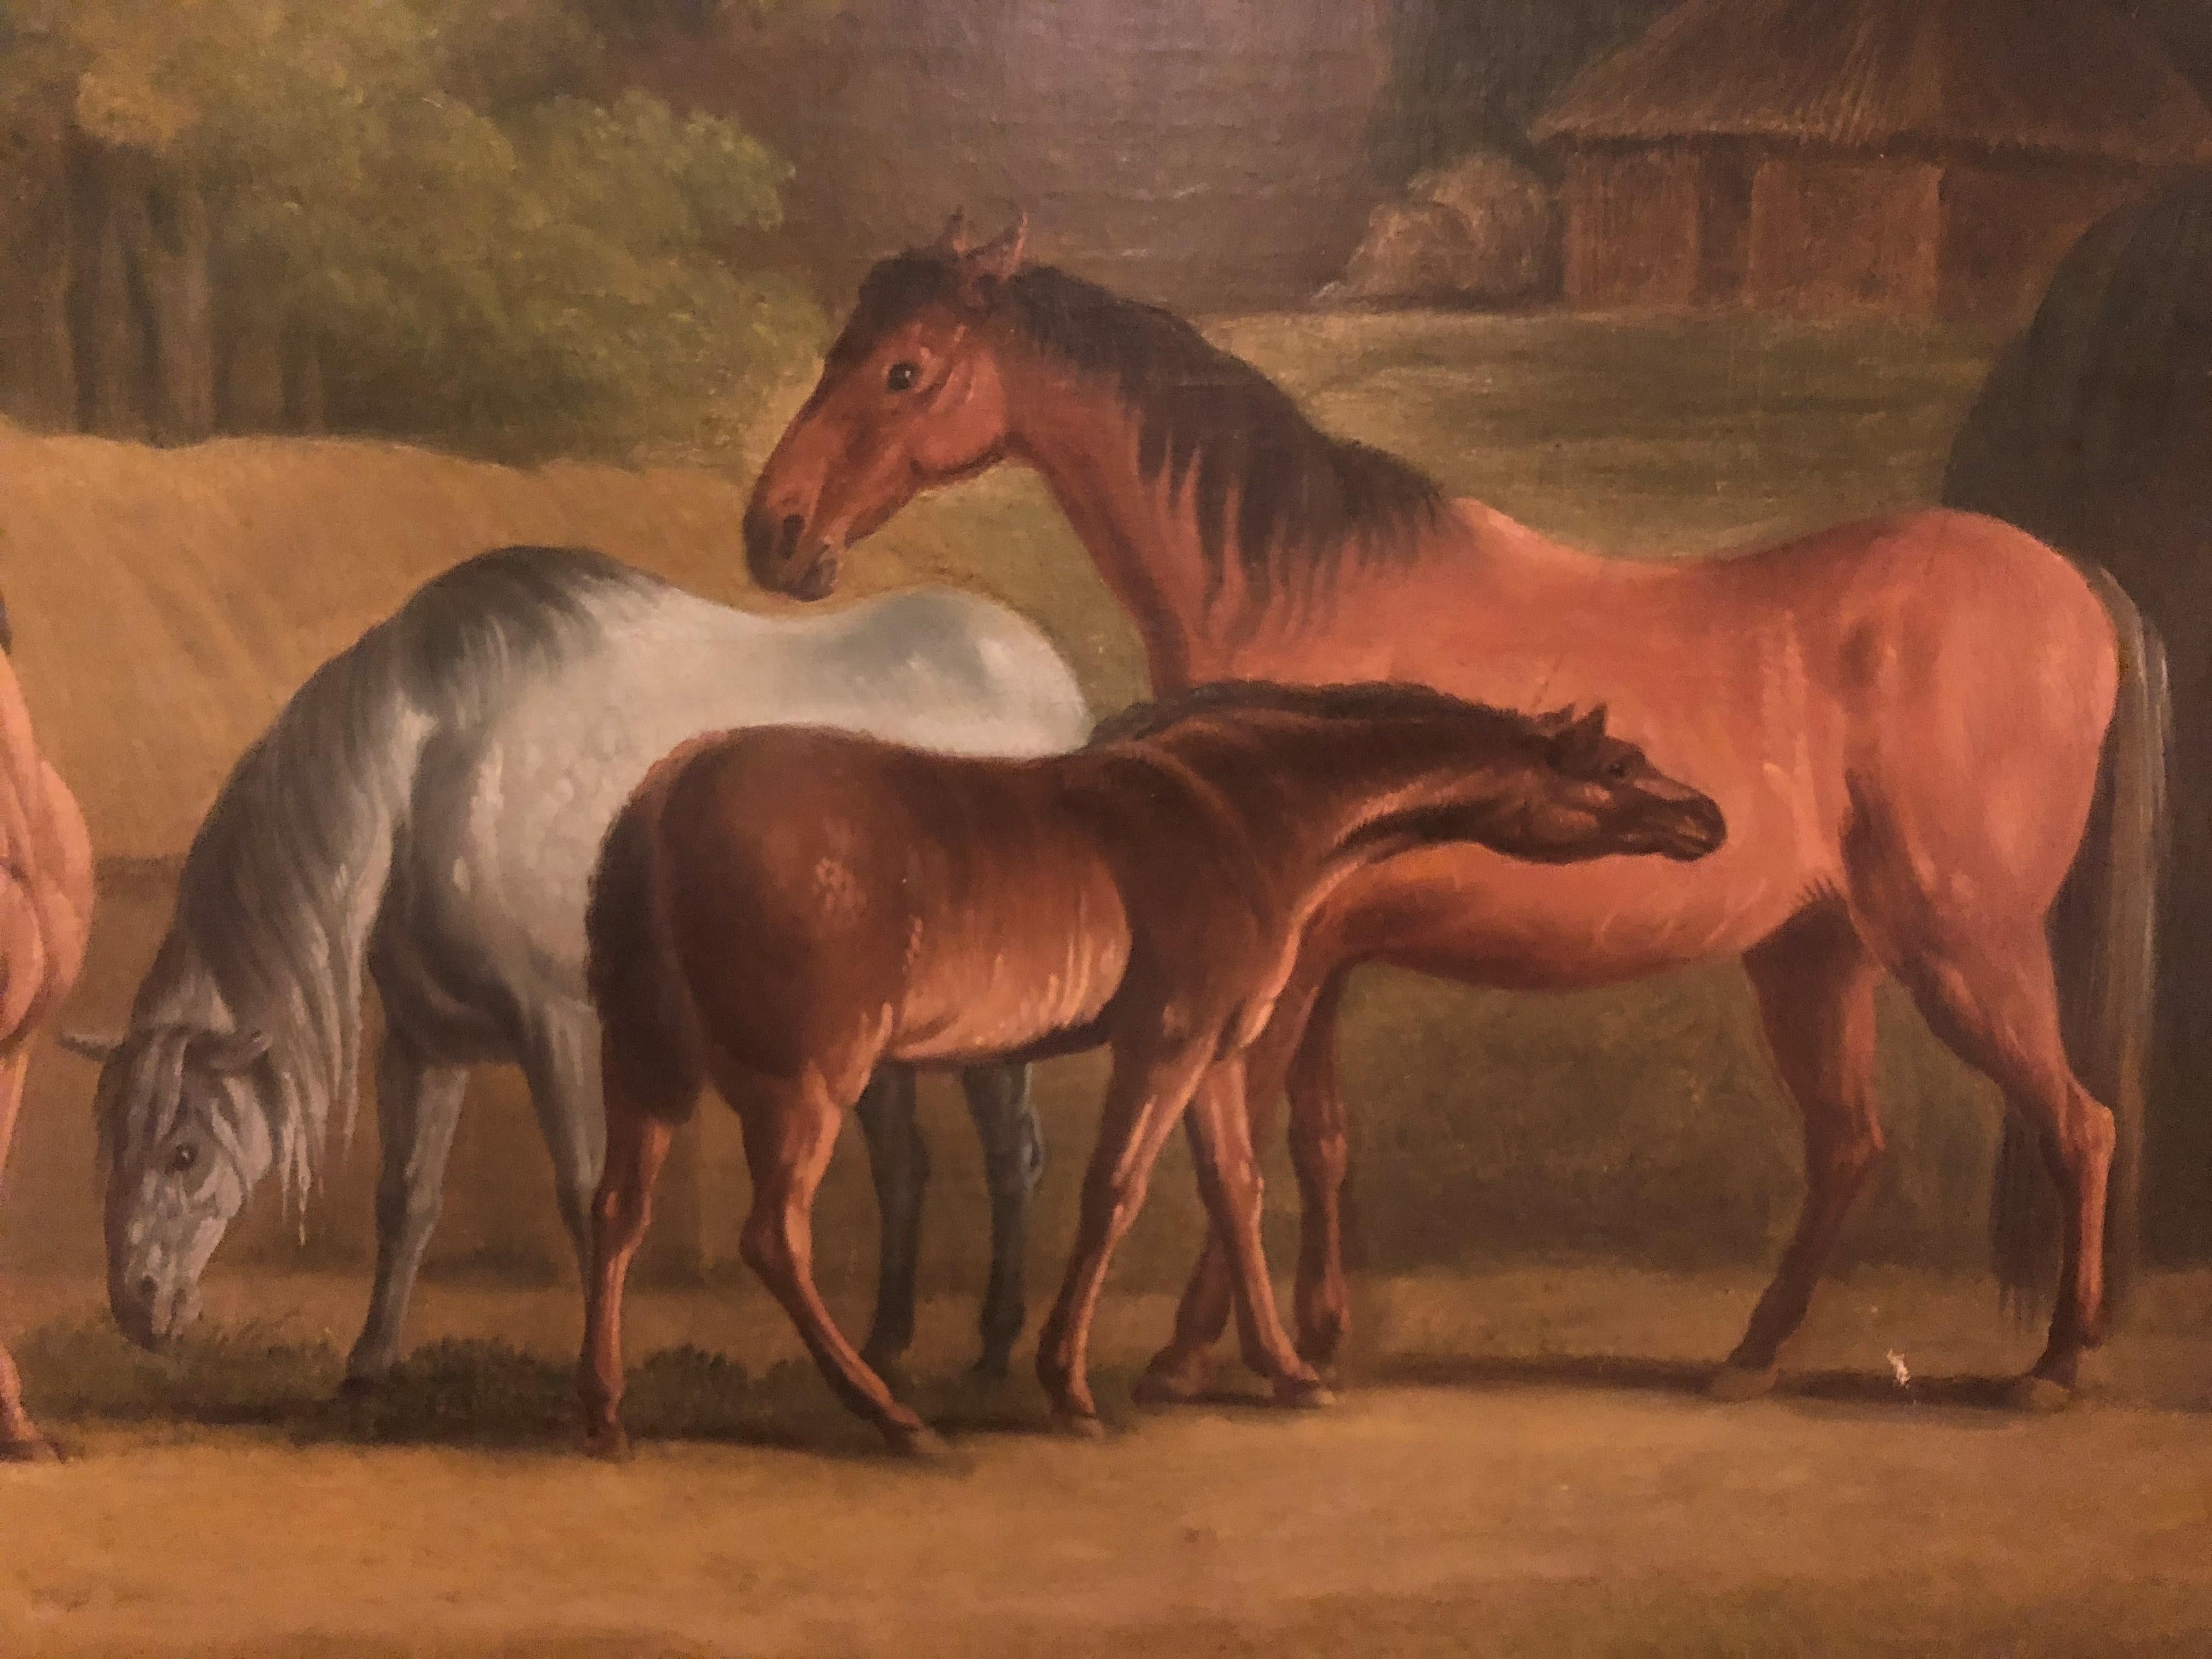 Ölgemälde von Pferden aus dem 19. Jahrhundert – Mares und Foals in einer Landschaft (Braun), Landscape Painting, von Daniel Clowes